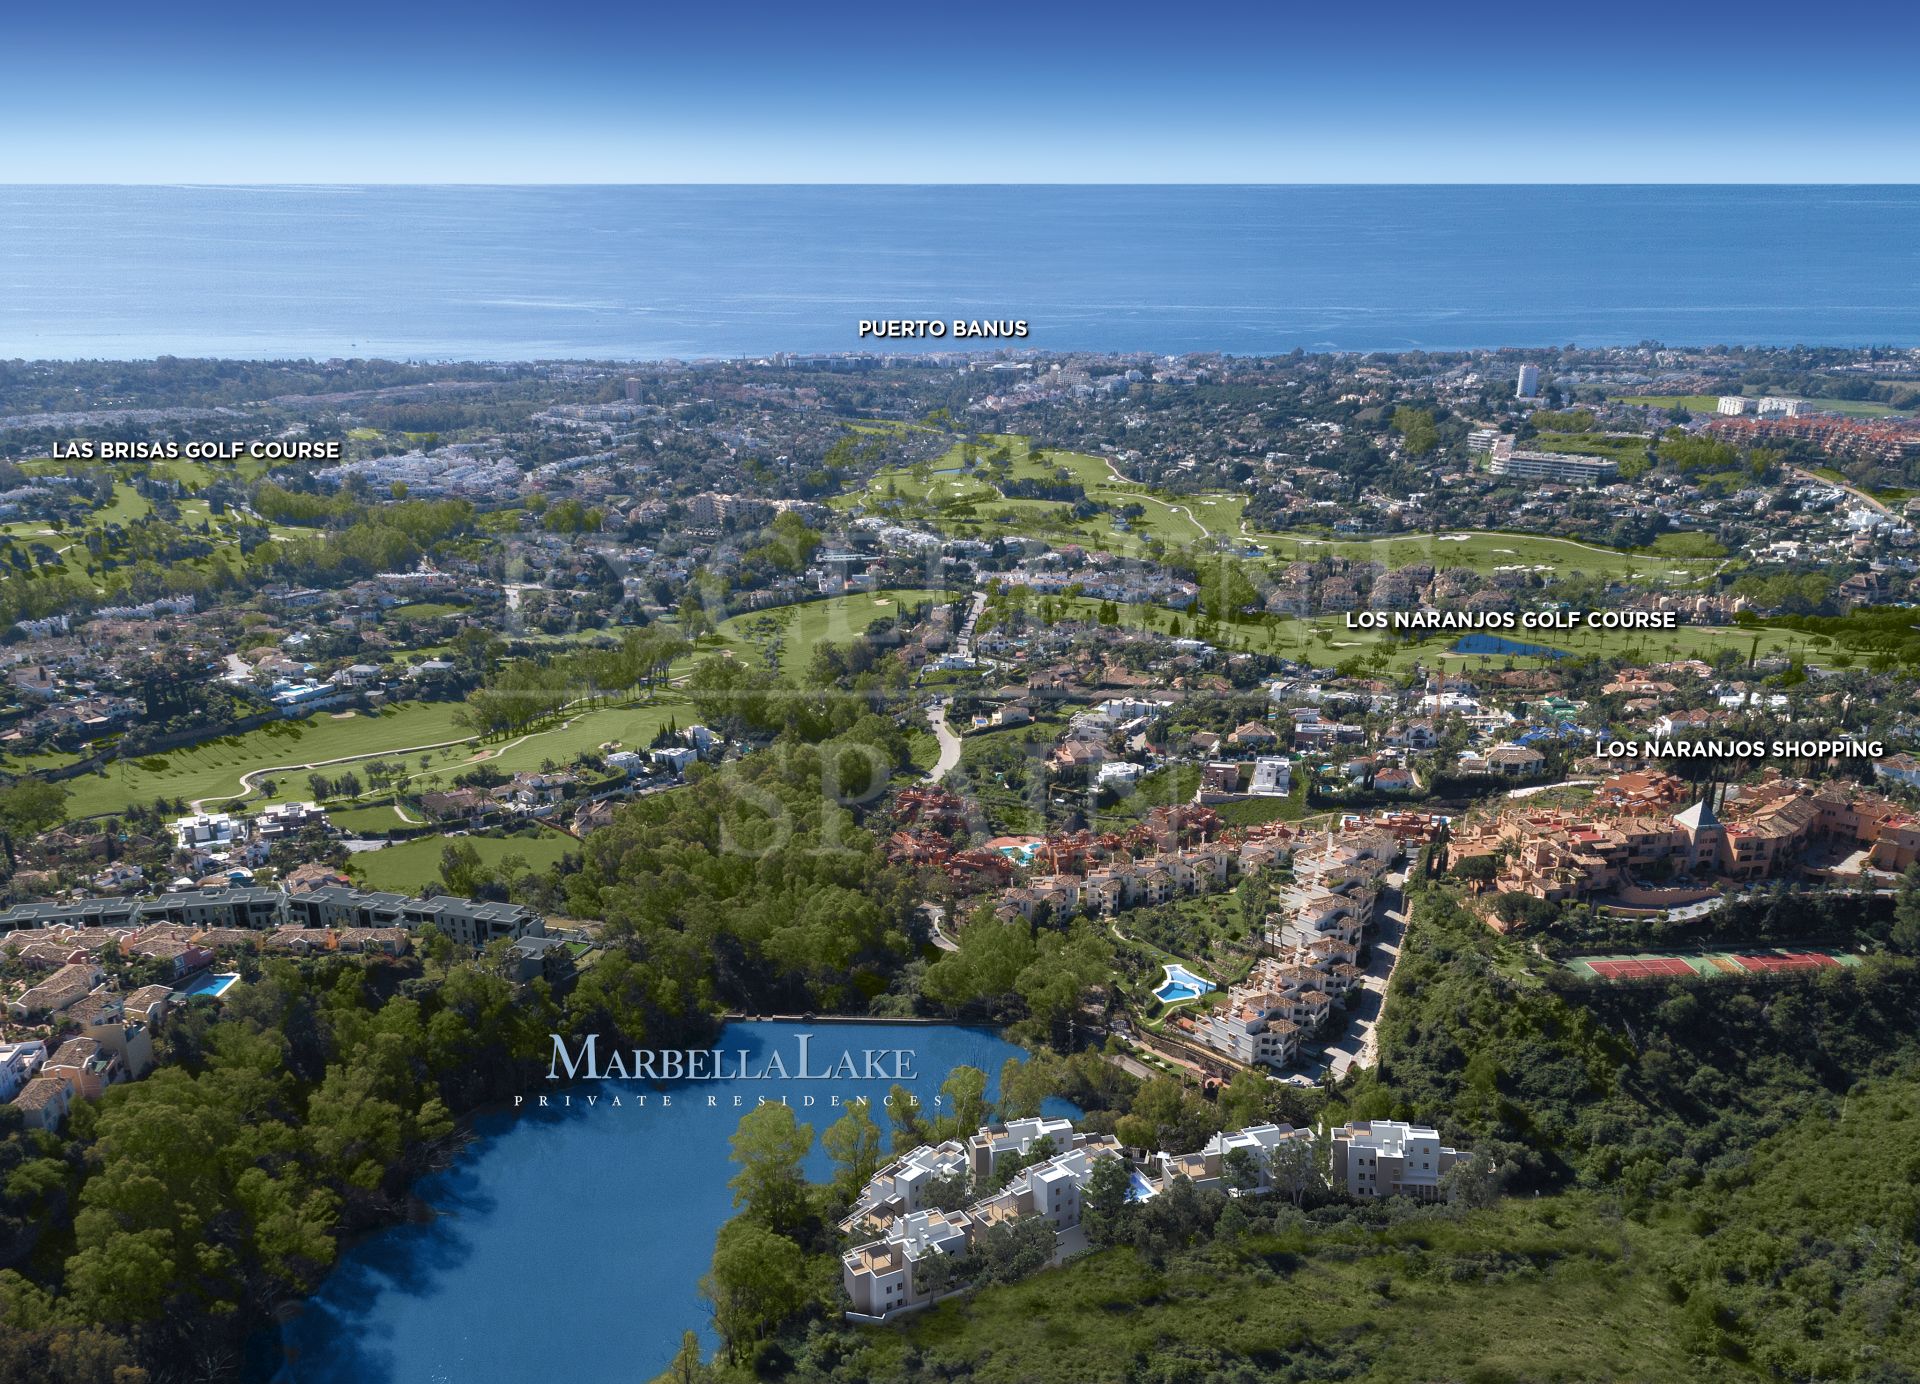 Property development Marbella Lake, Nueva Andalucia